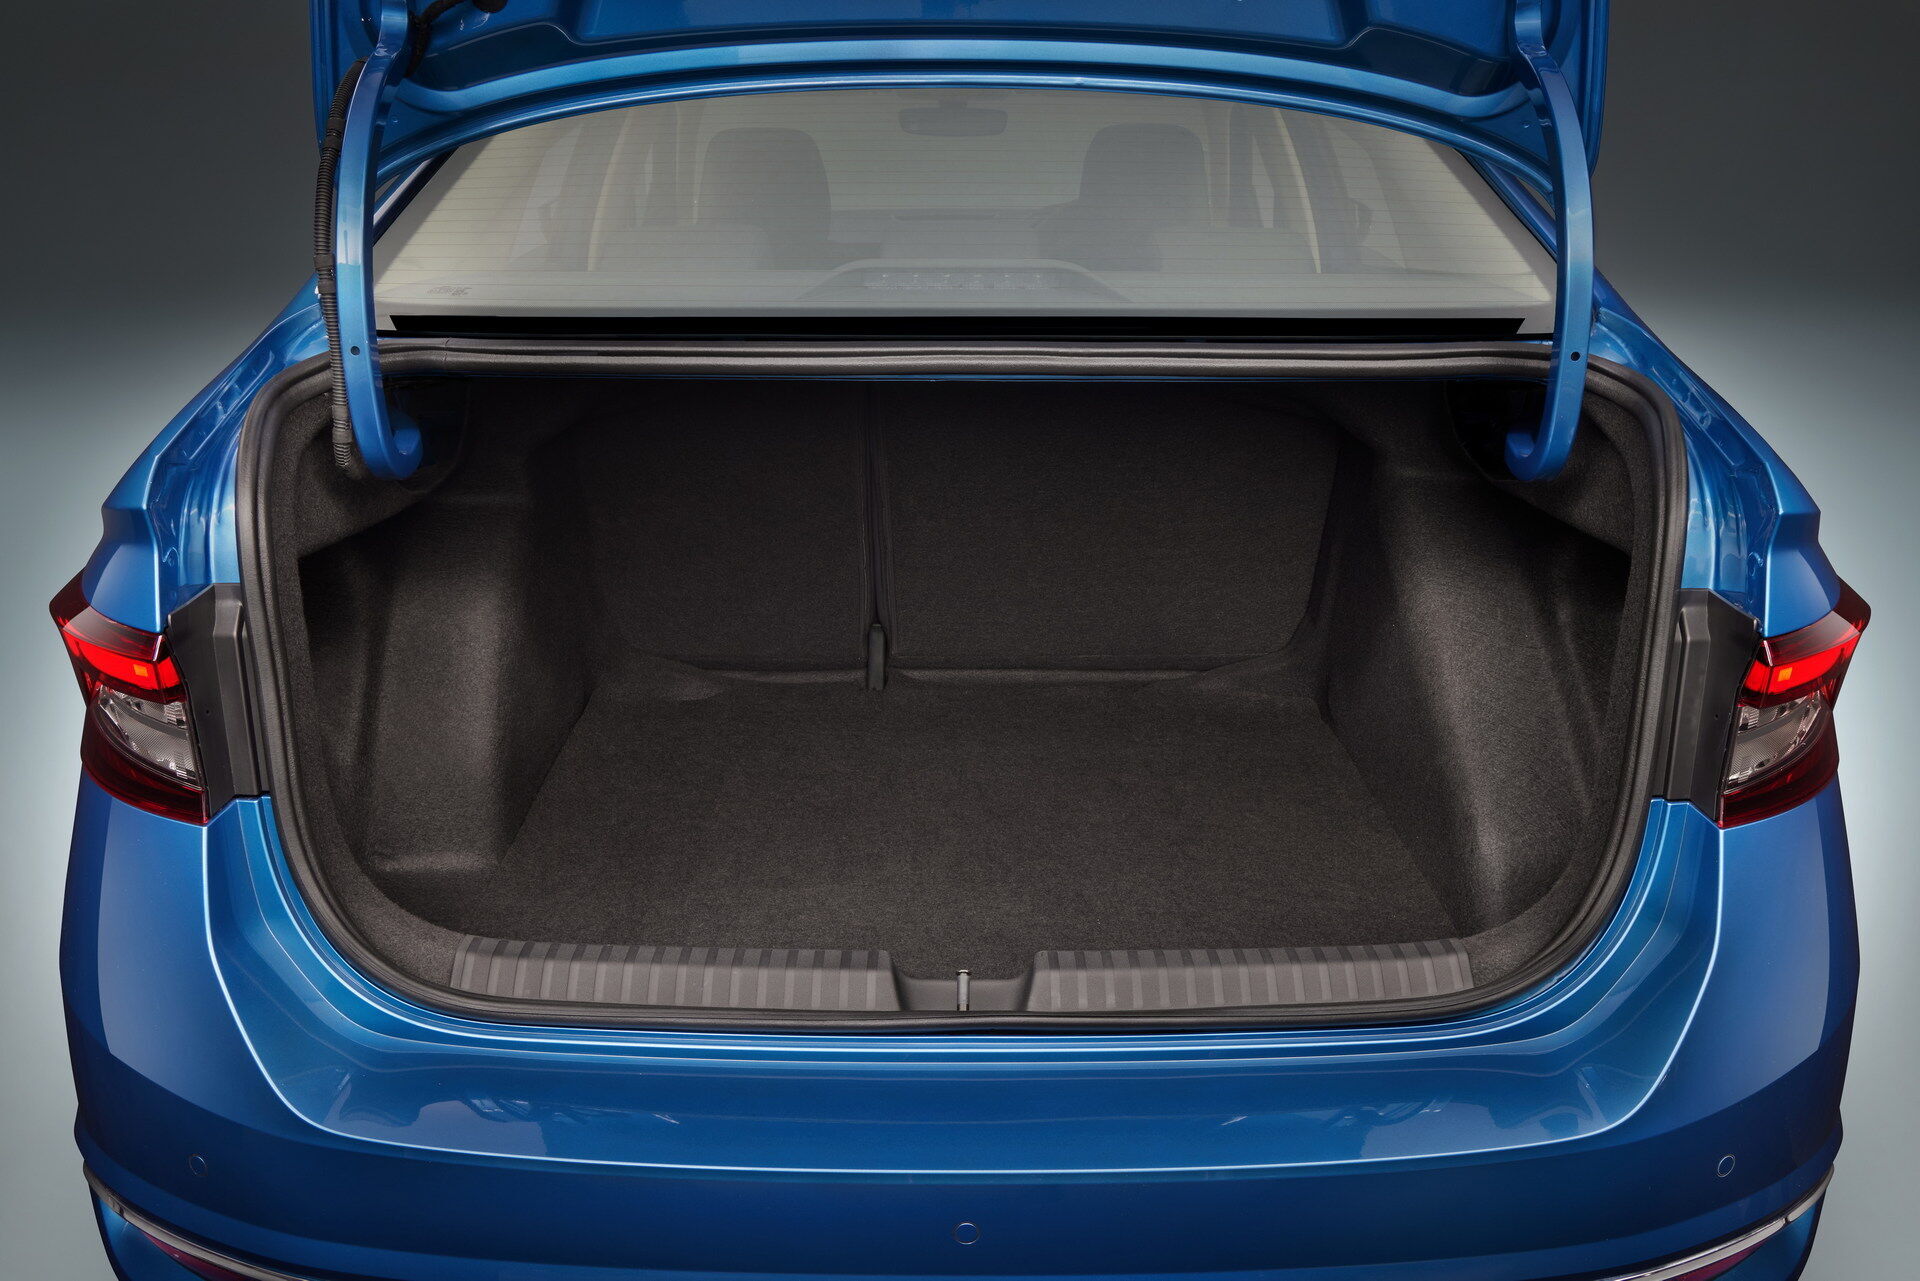 Объем багажного отделения варьируется от 521 до 1050 л в зависимости от положения спинки задних сидений